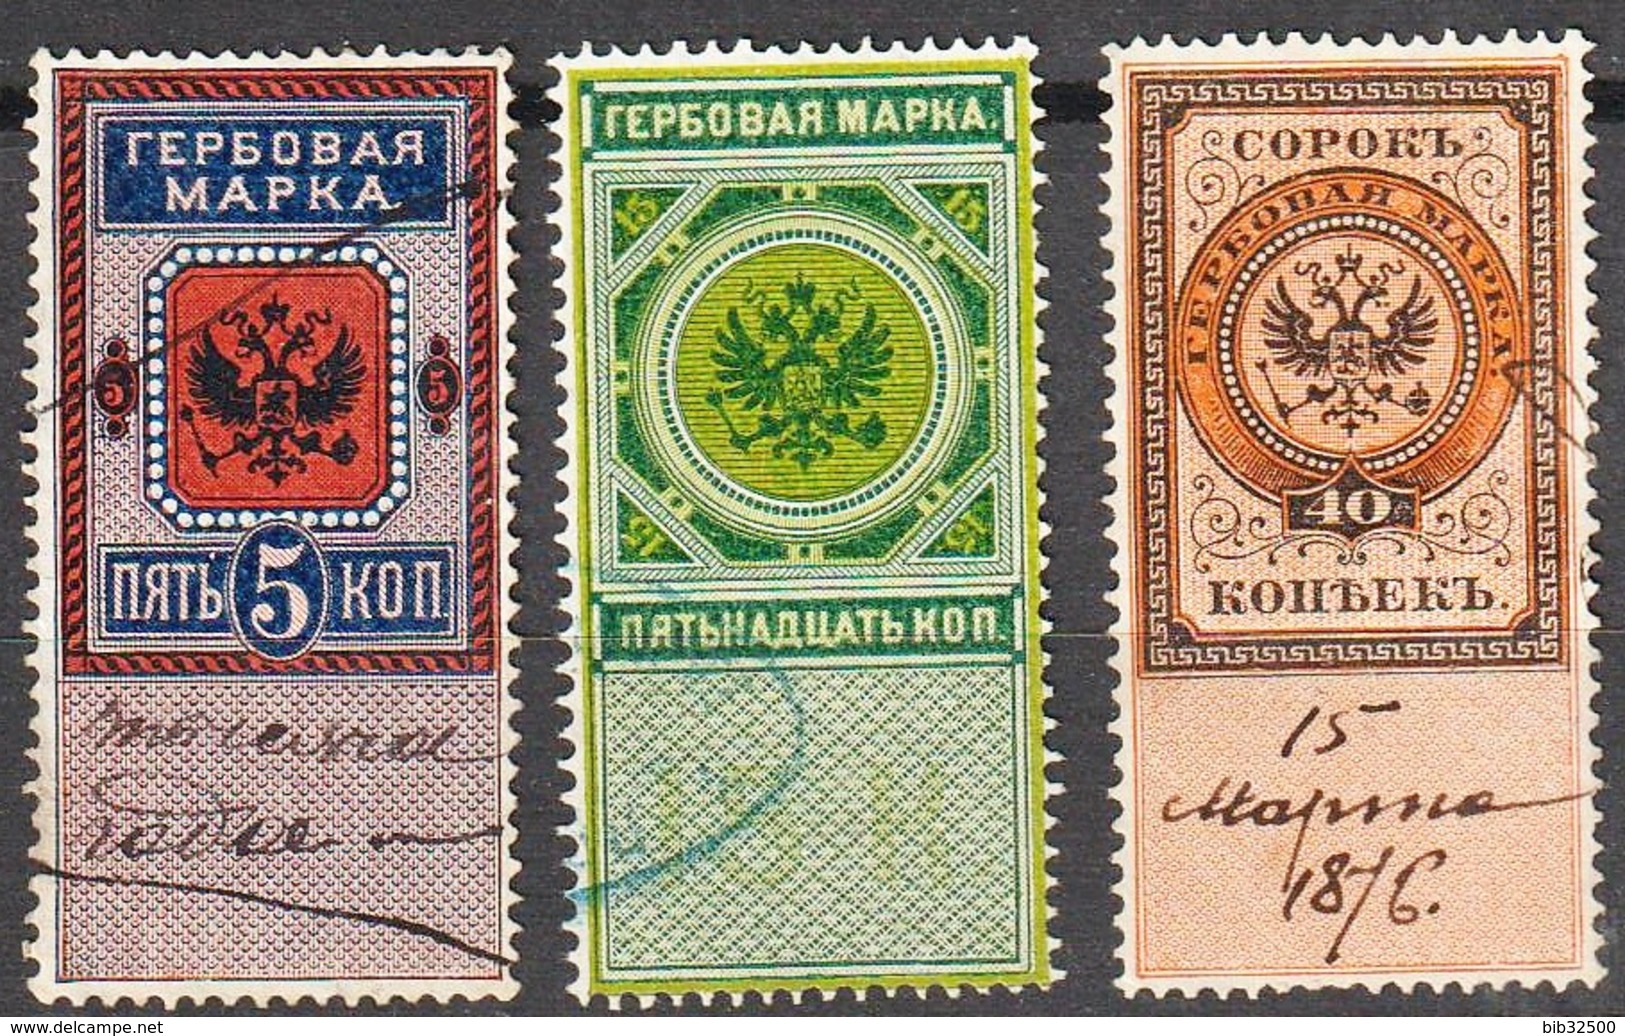 :-: Timbres Fiscaux Russes De L'Empire - 1875 -  Première émission  - N° 1 - 2 - 3 - Oblitérés - - Revenue Stamps